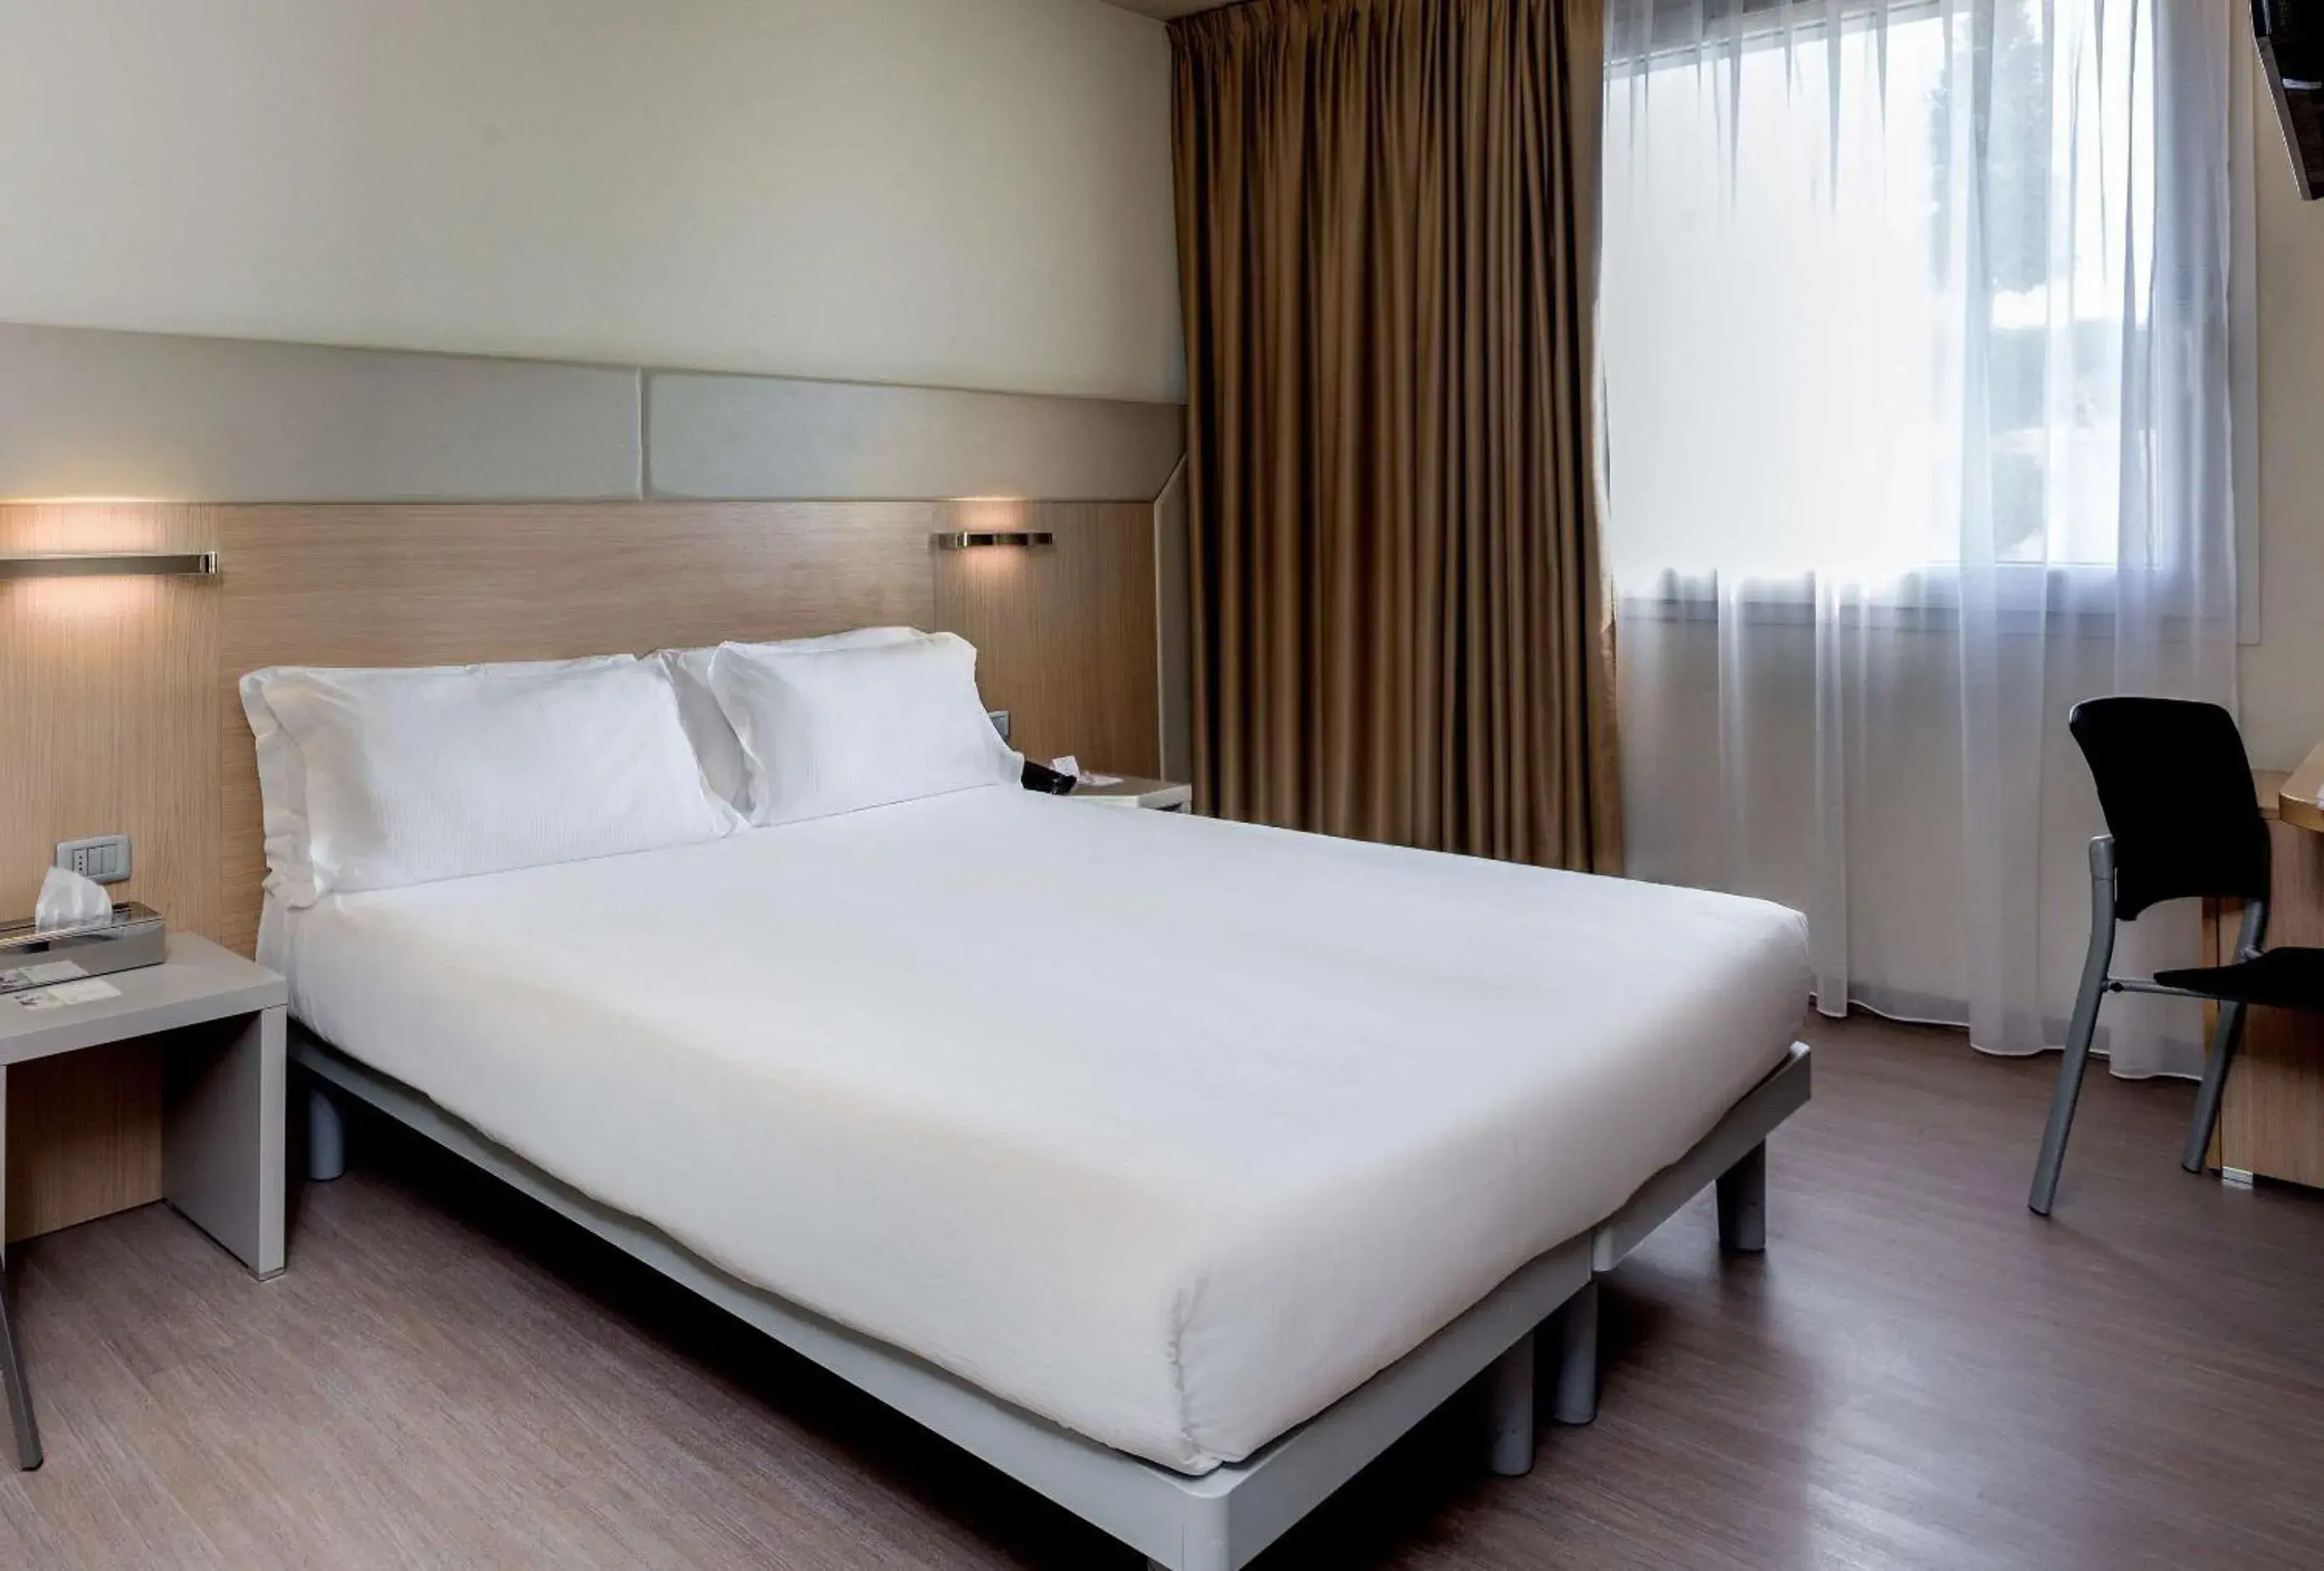 Bed in Best Western Aries Hotel